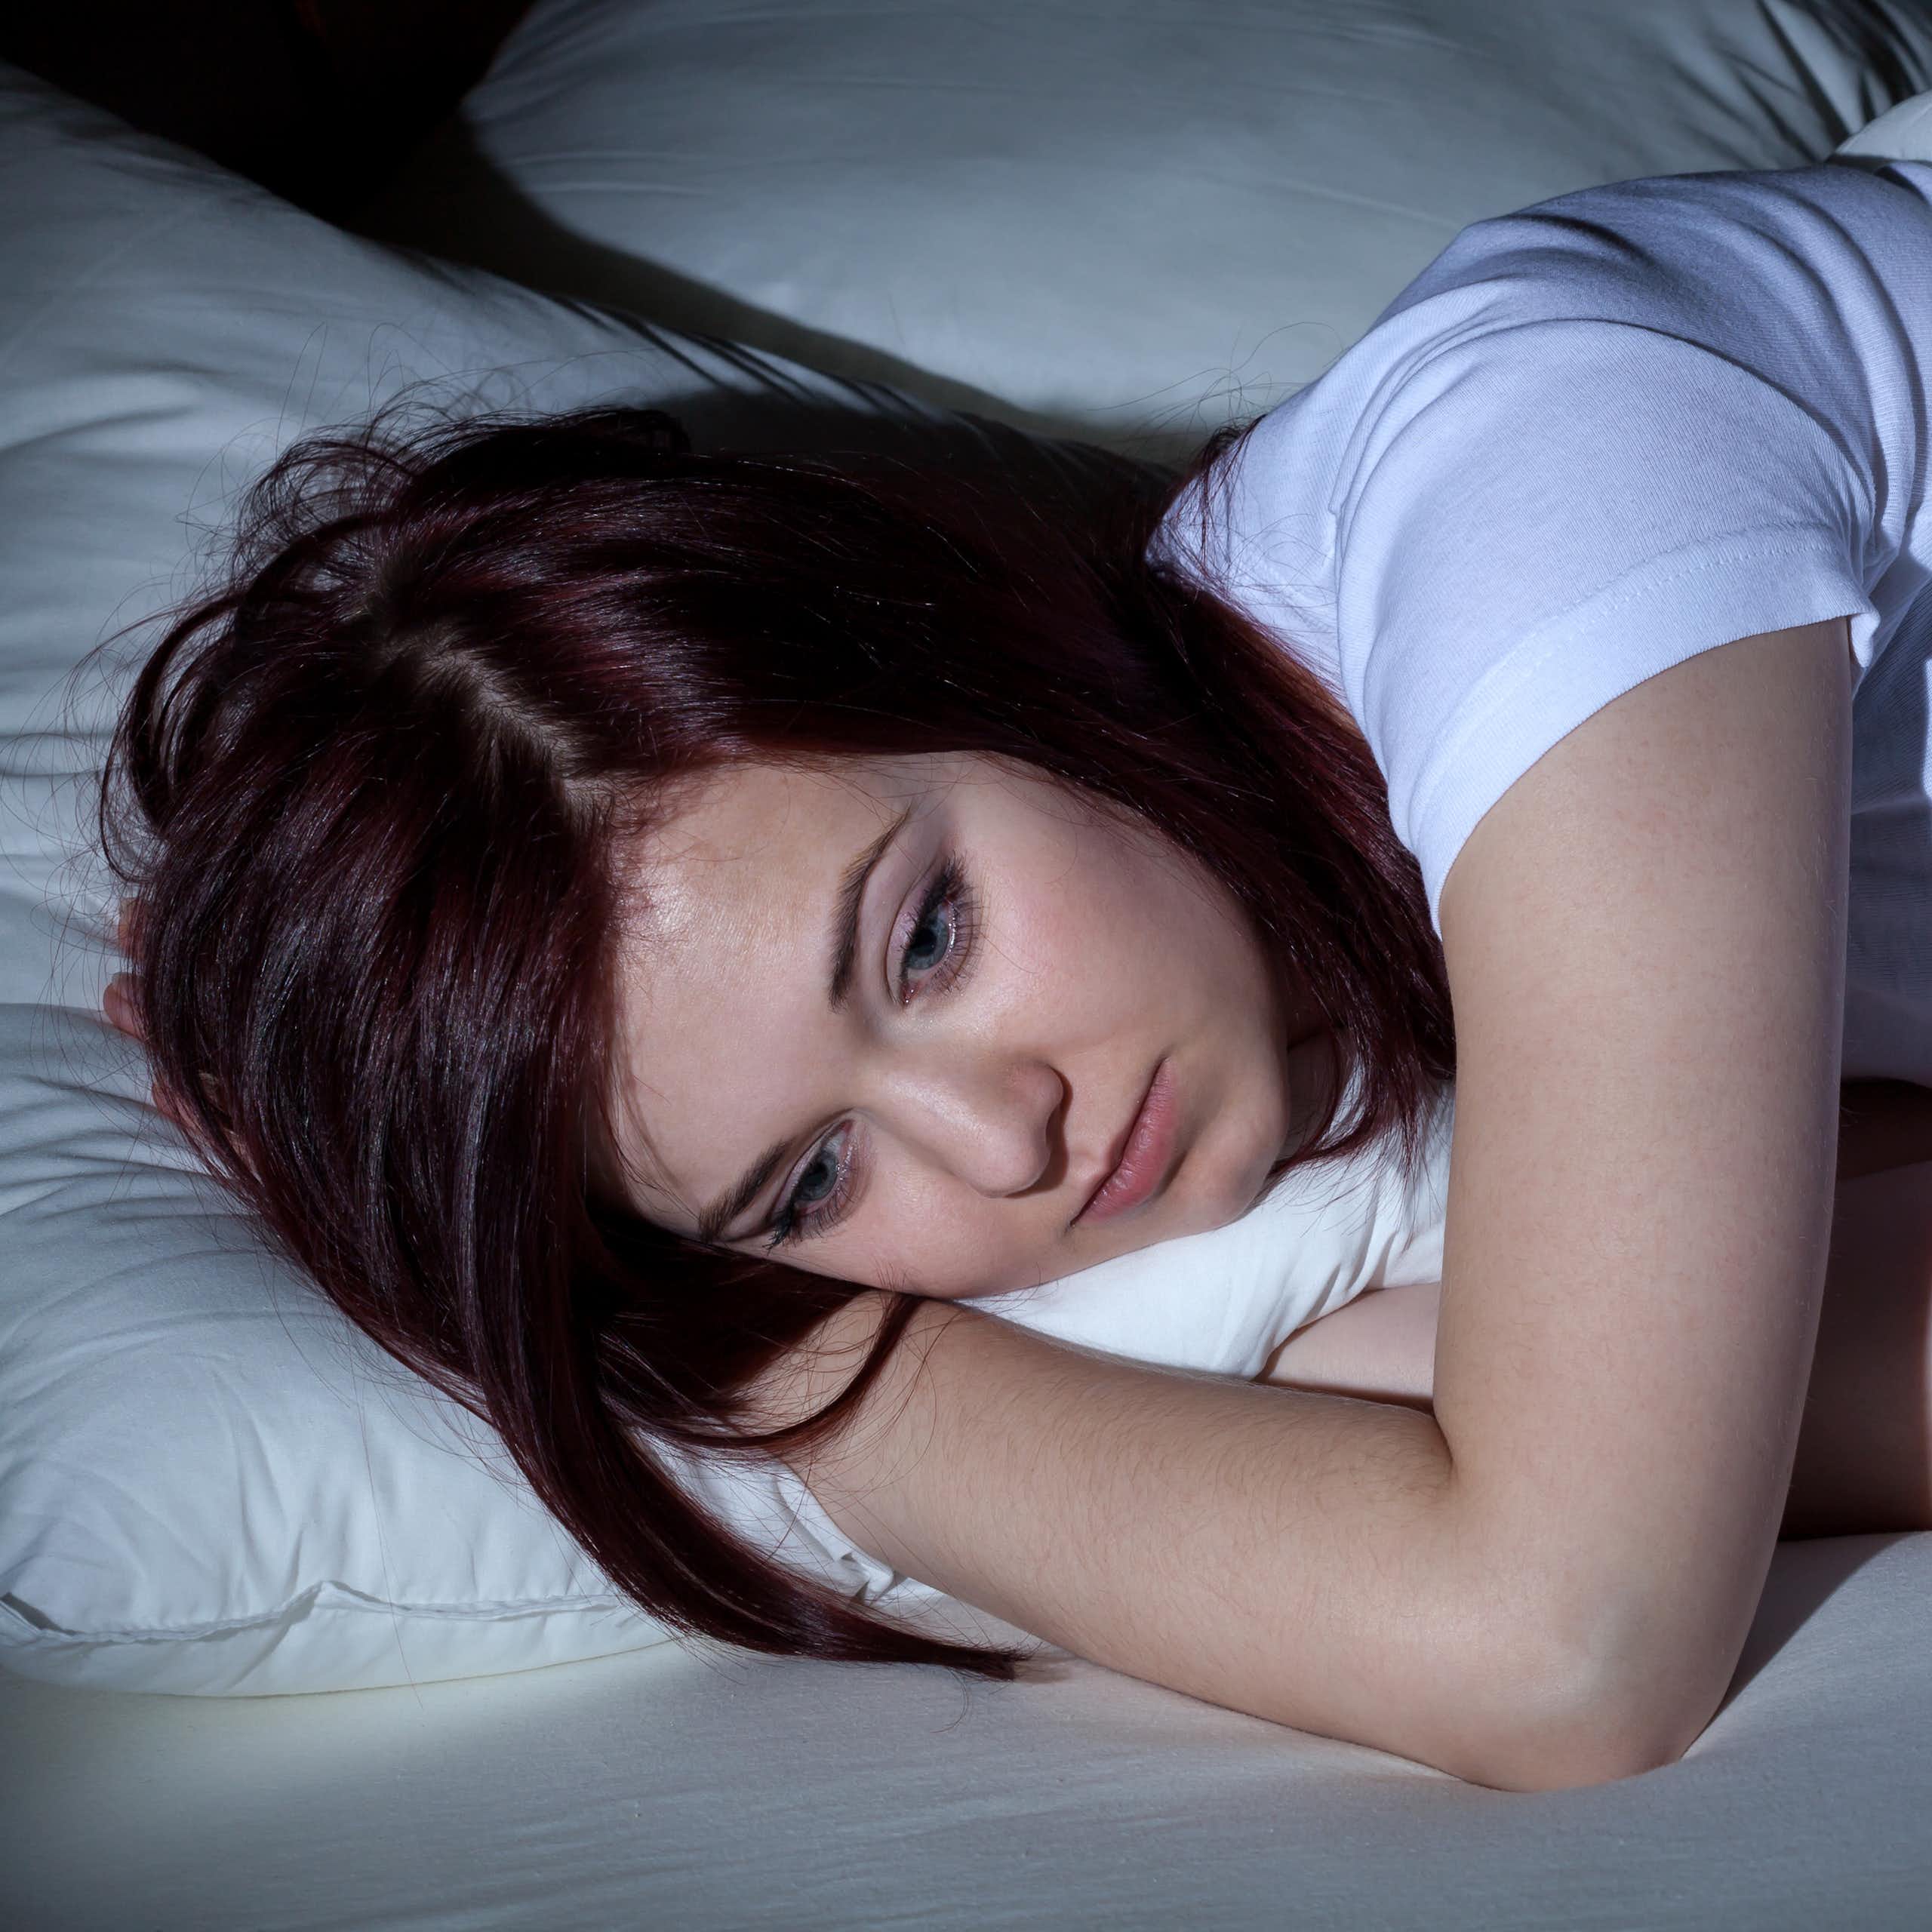 Une jeune femme est allongée dans son lit et semble peiner à trouver le sommeil.